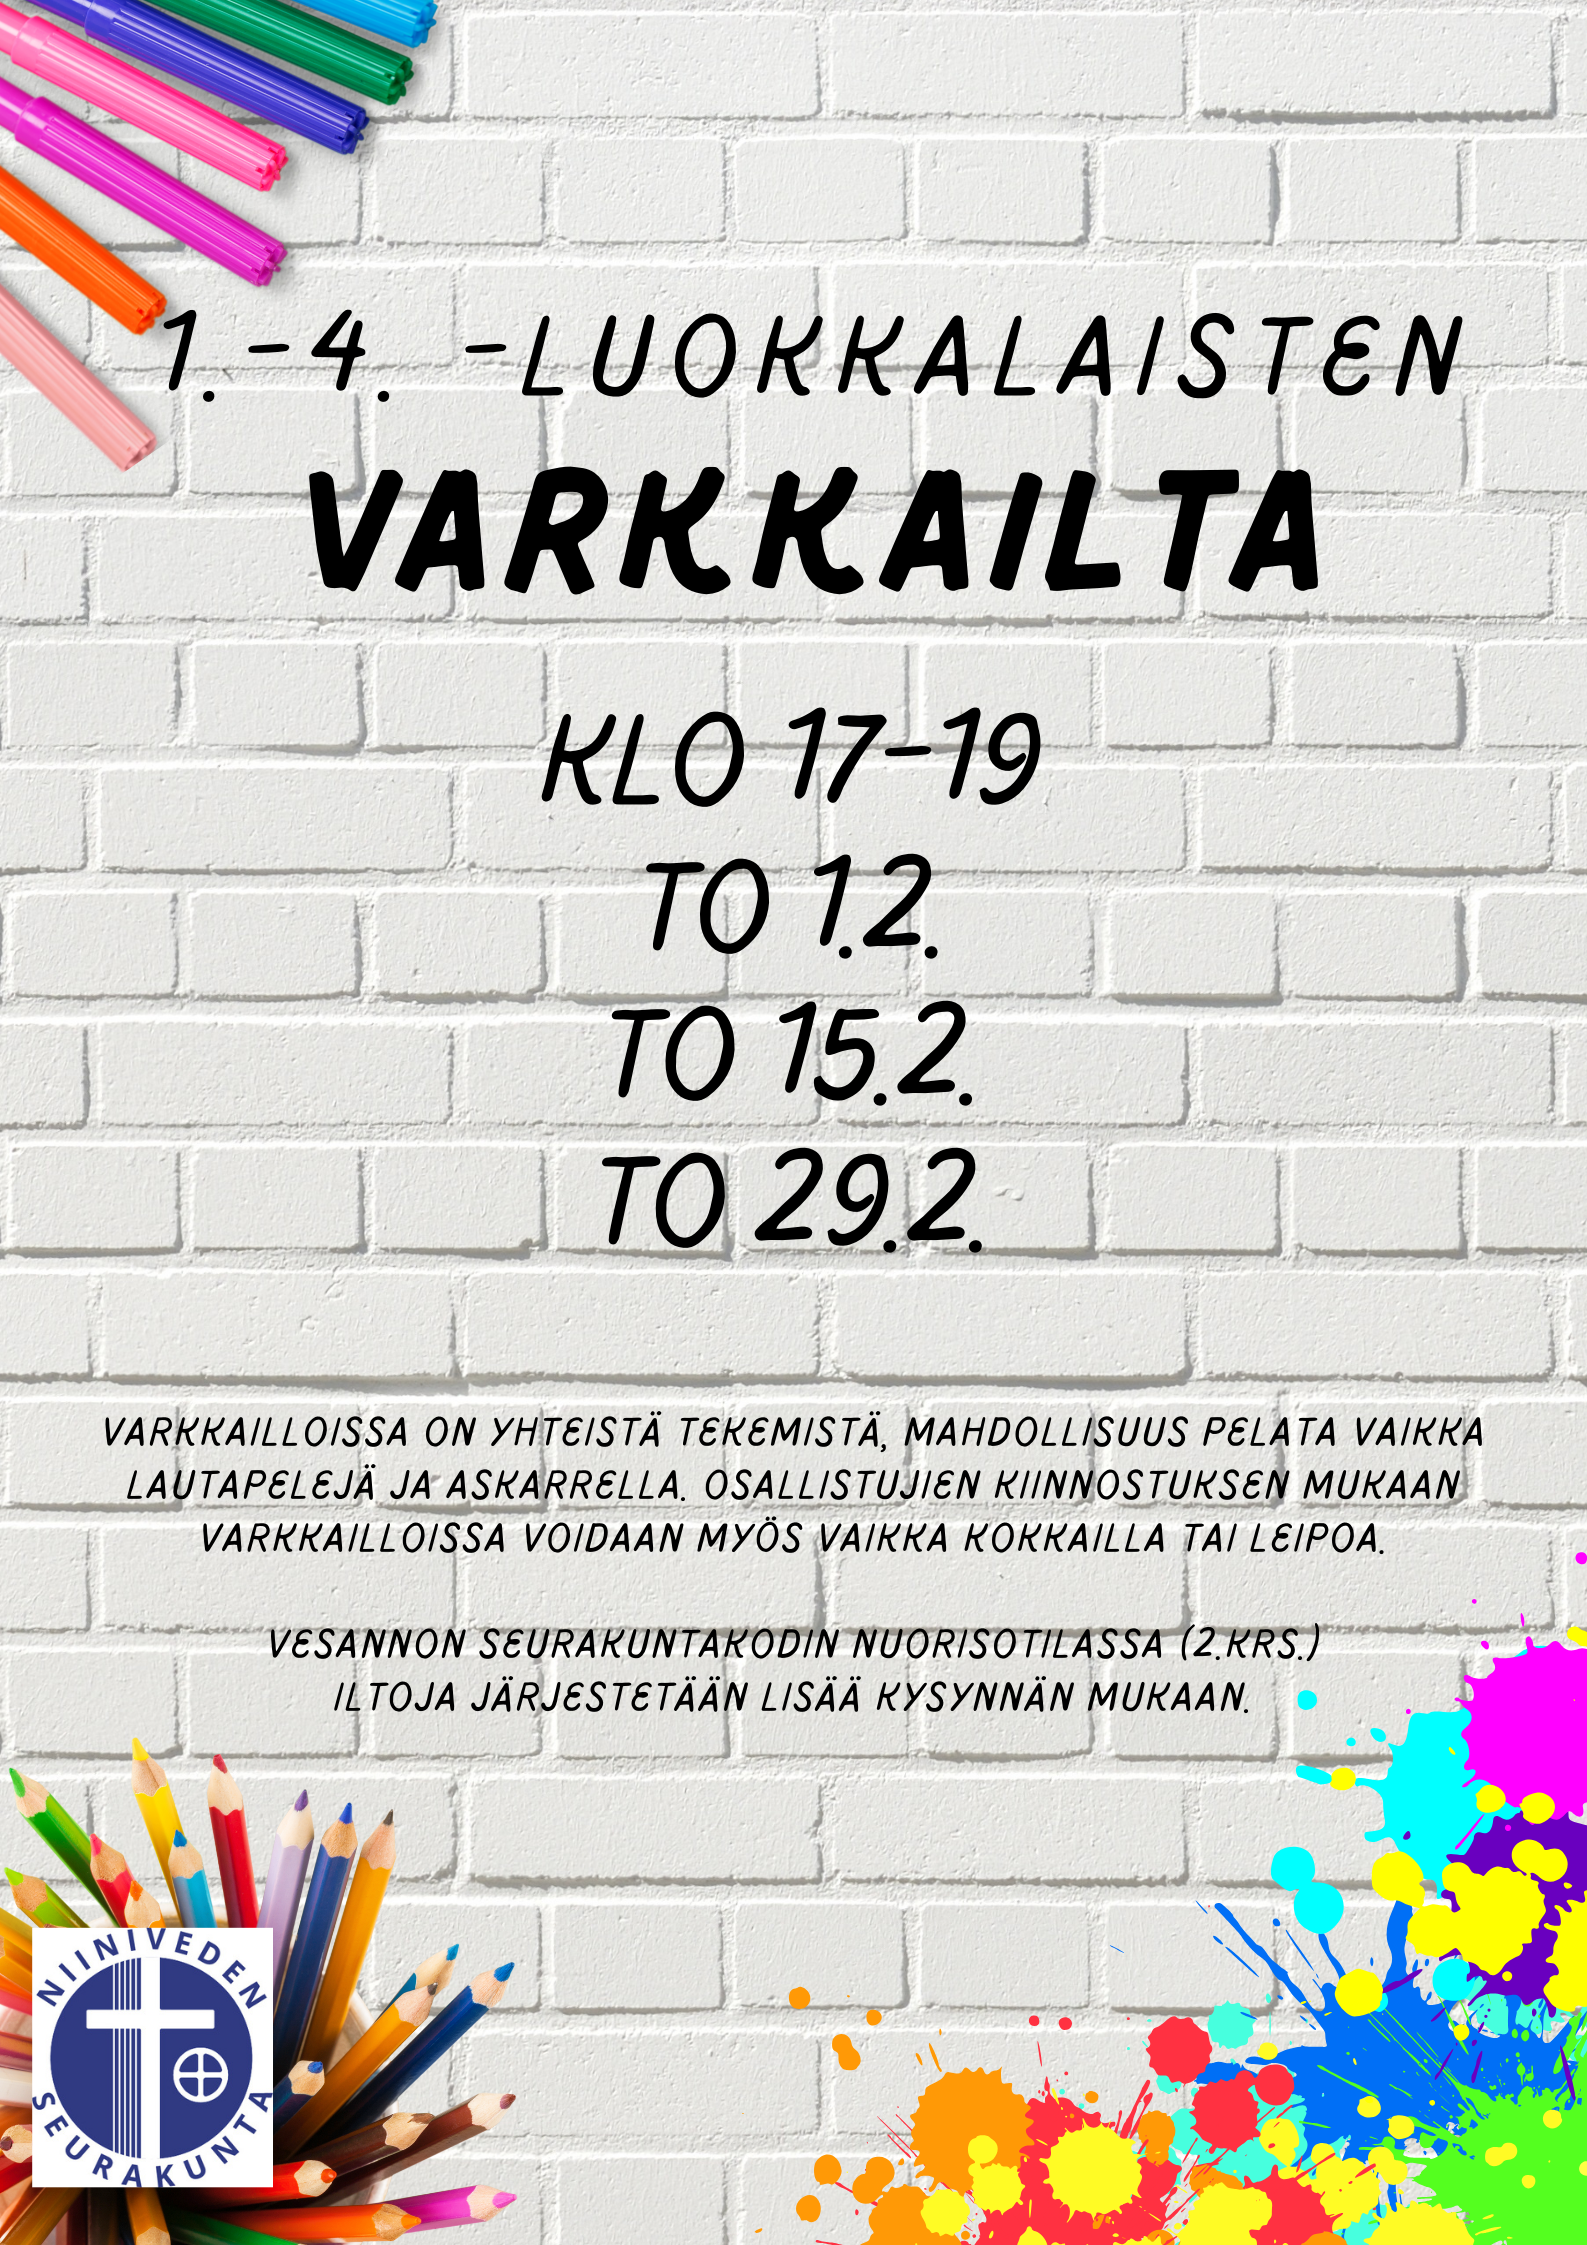 Kevätkauden Varkkaillat jatkuvat to 1.2. klo 17-19. Muut Varkkaillat to 15.2. ja 29.2. Vesannon srk-kodilla. 1.-4.-luokkalaisille.